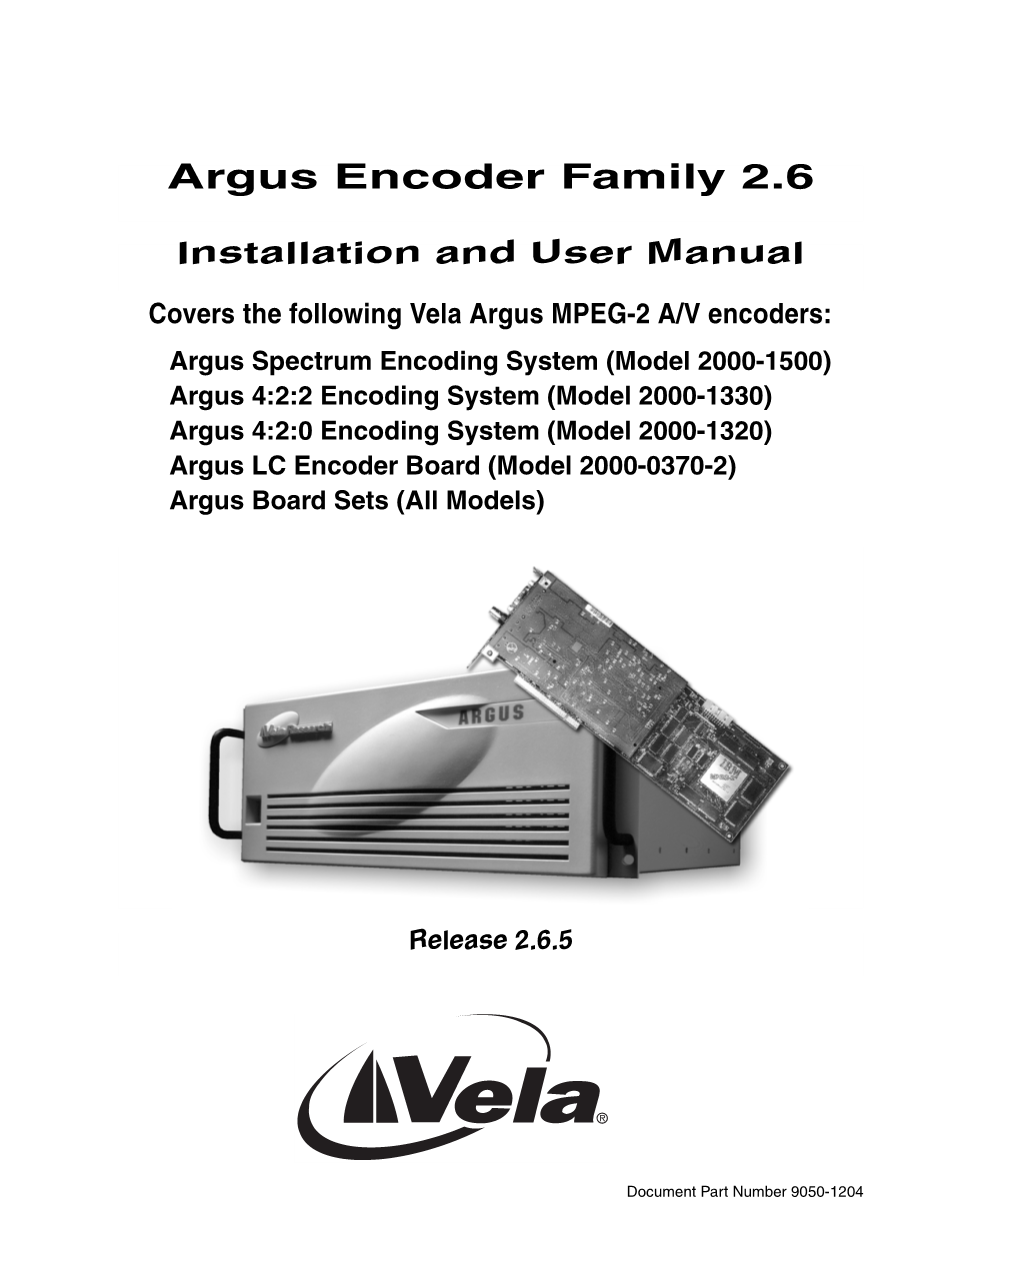 Argus Encoder Family 2.6